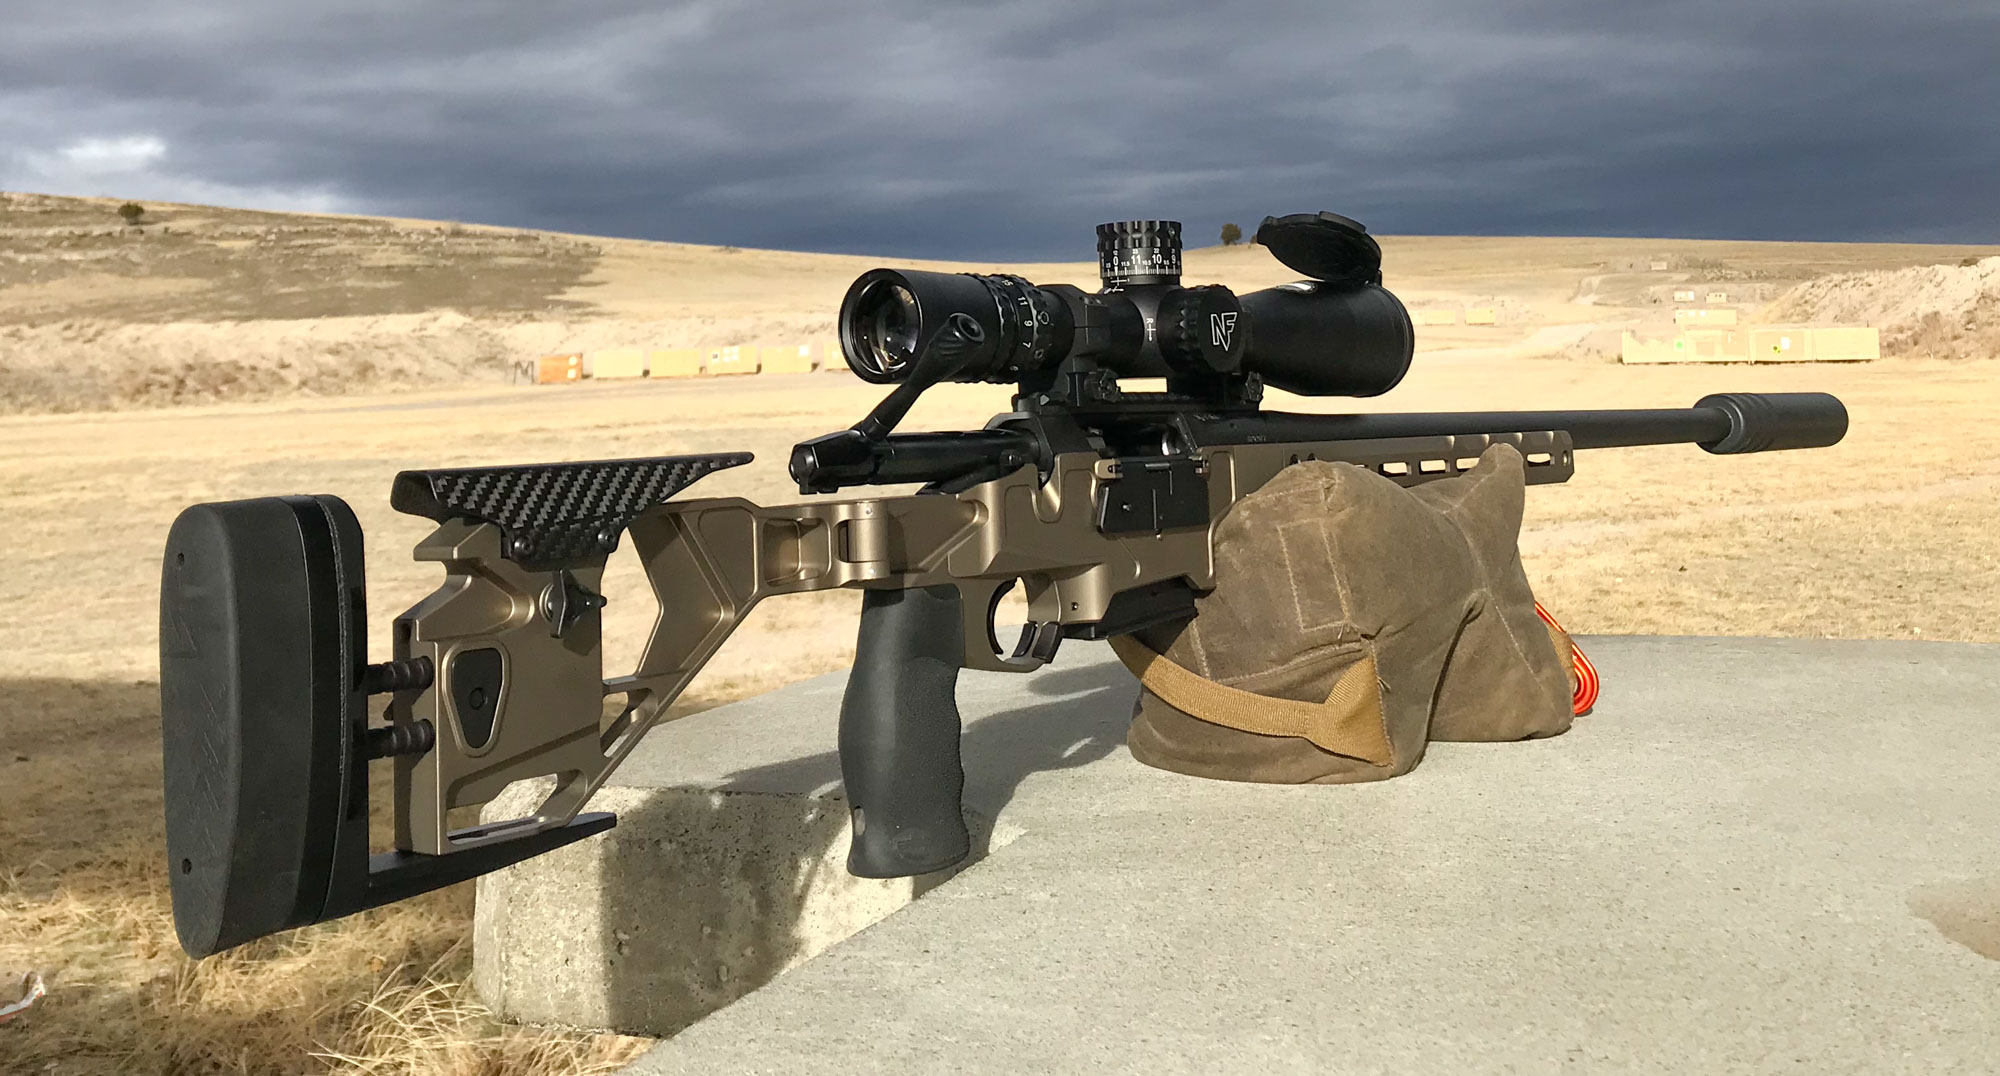 Precision rifle balanced on a bag at a shooting range